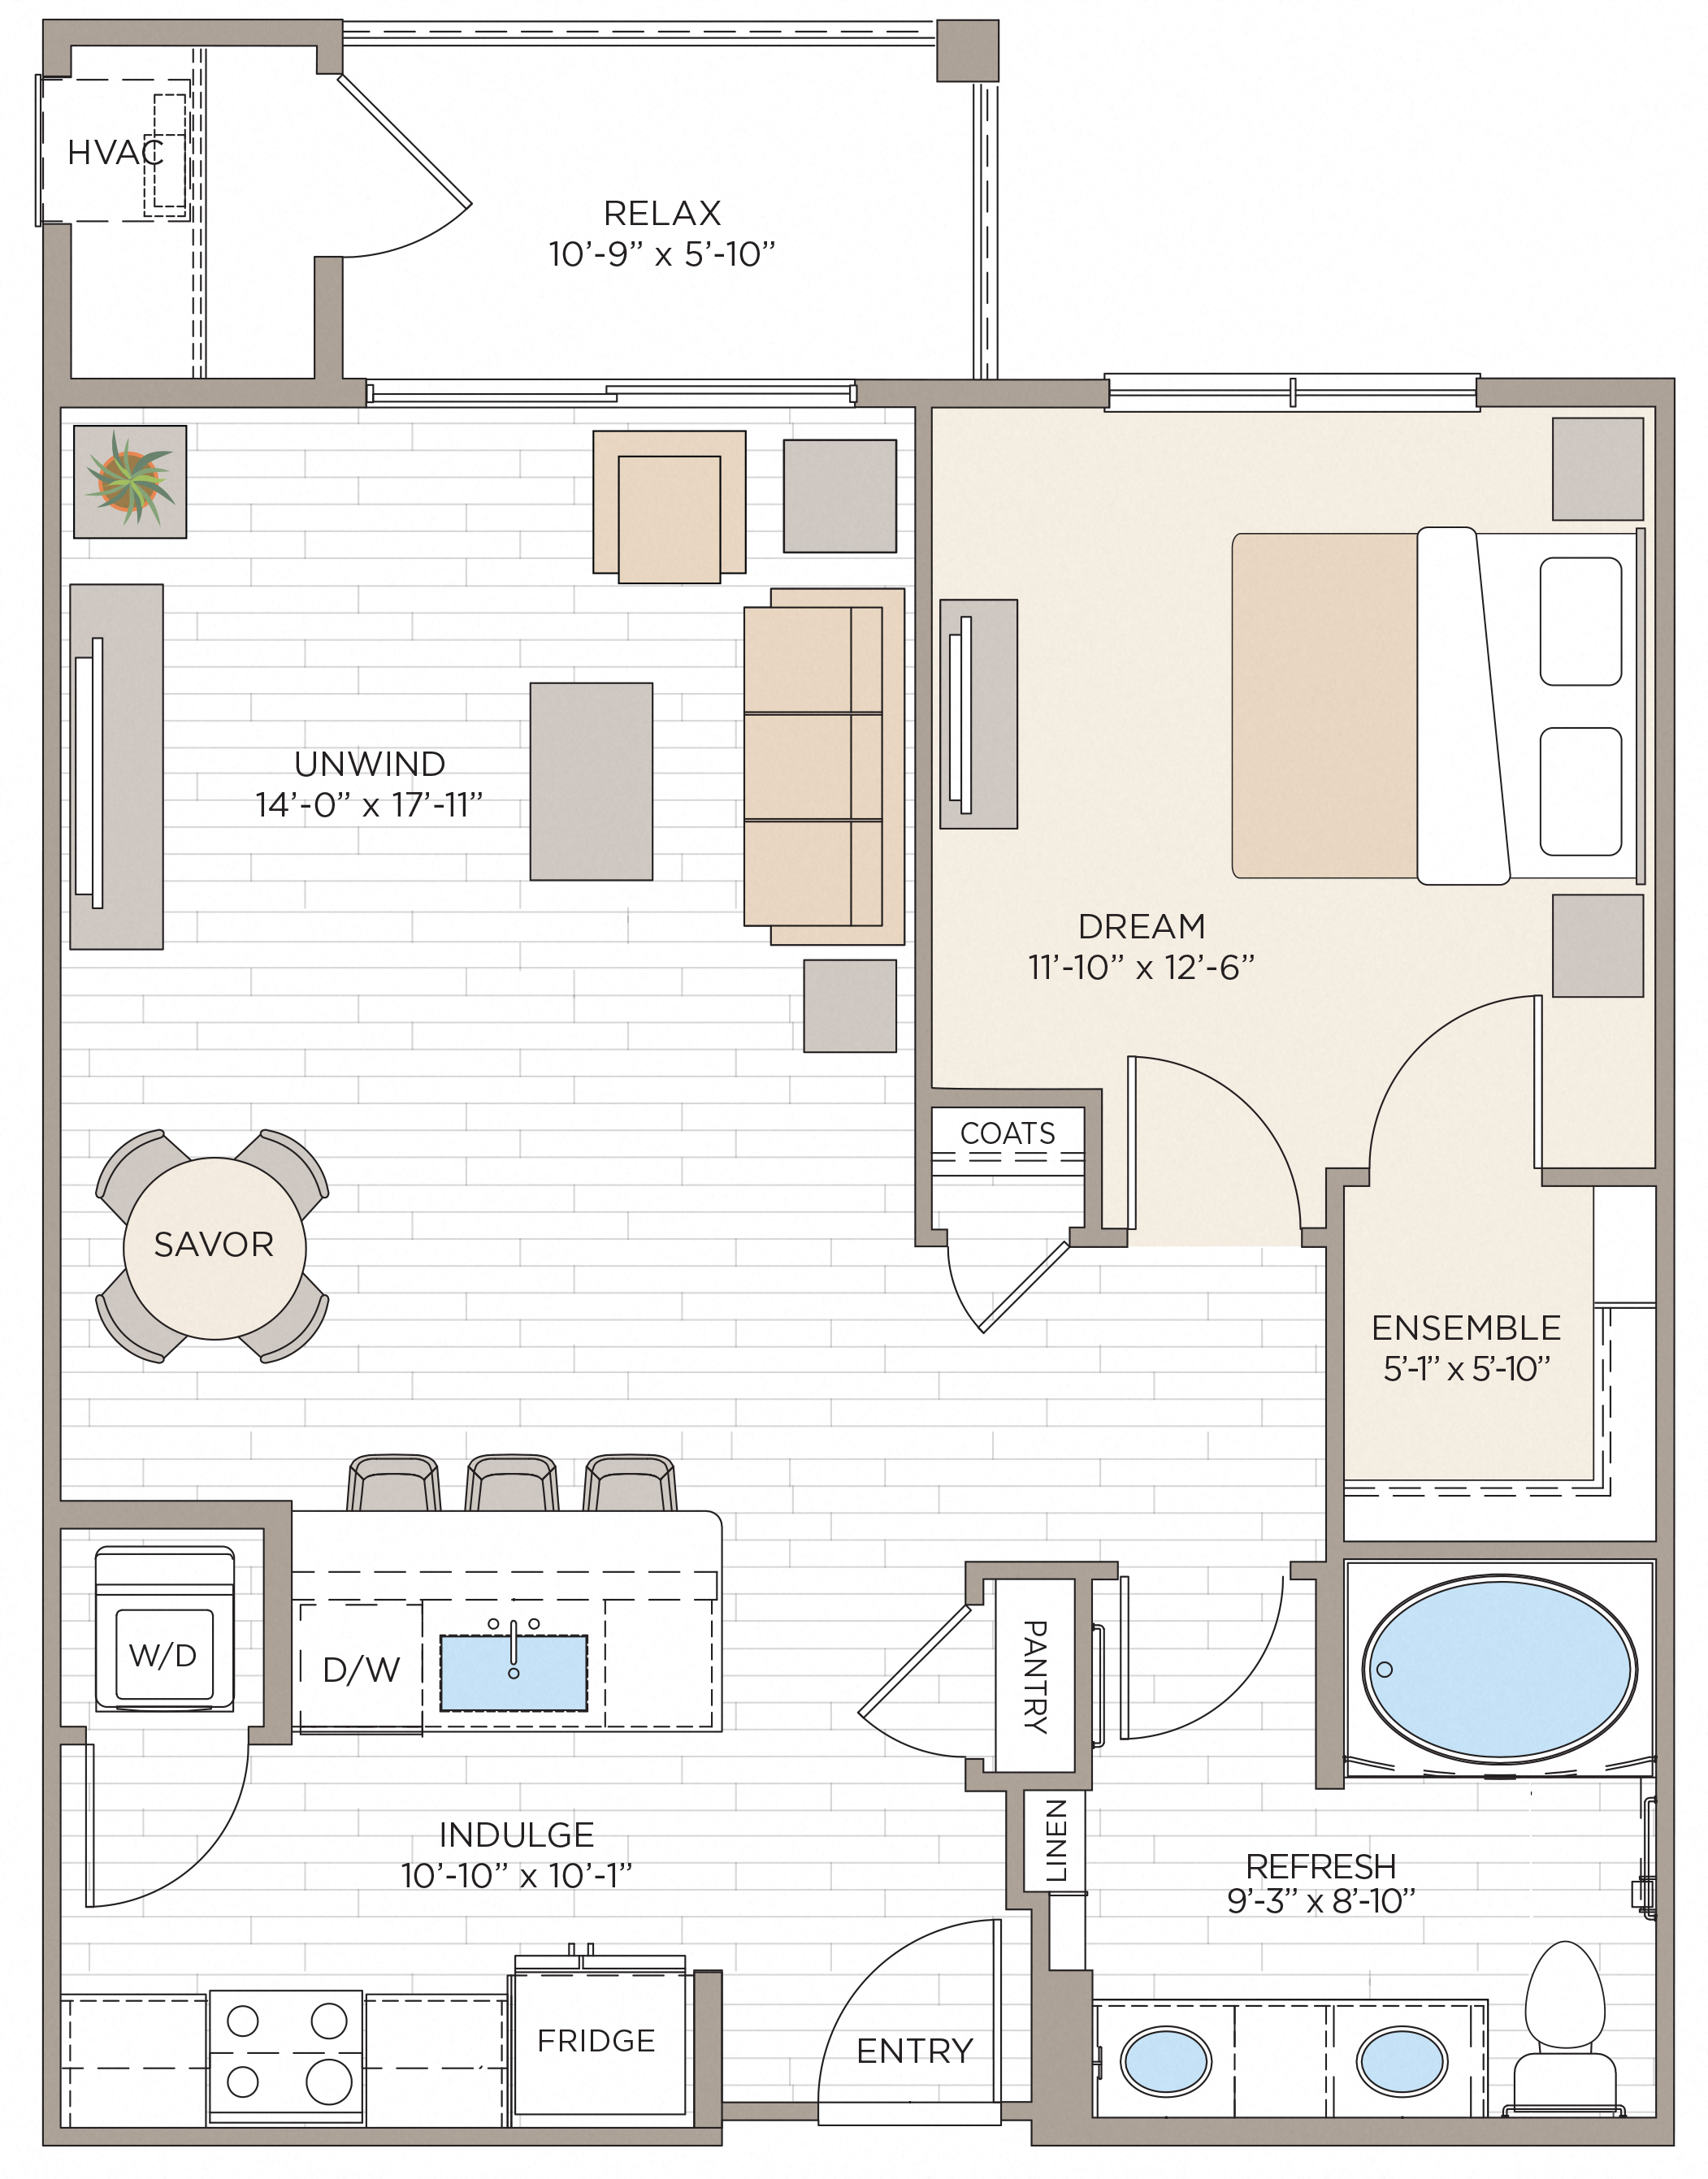 Floorplan for Apartment #08223, 1 bedroom unit at Halstead Maynard Crossing